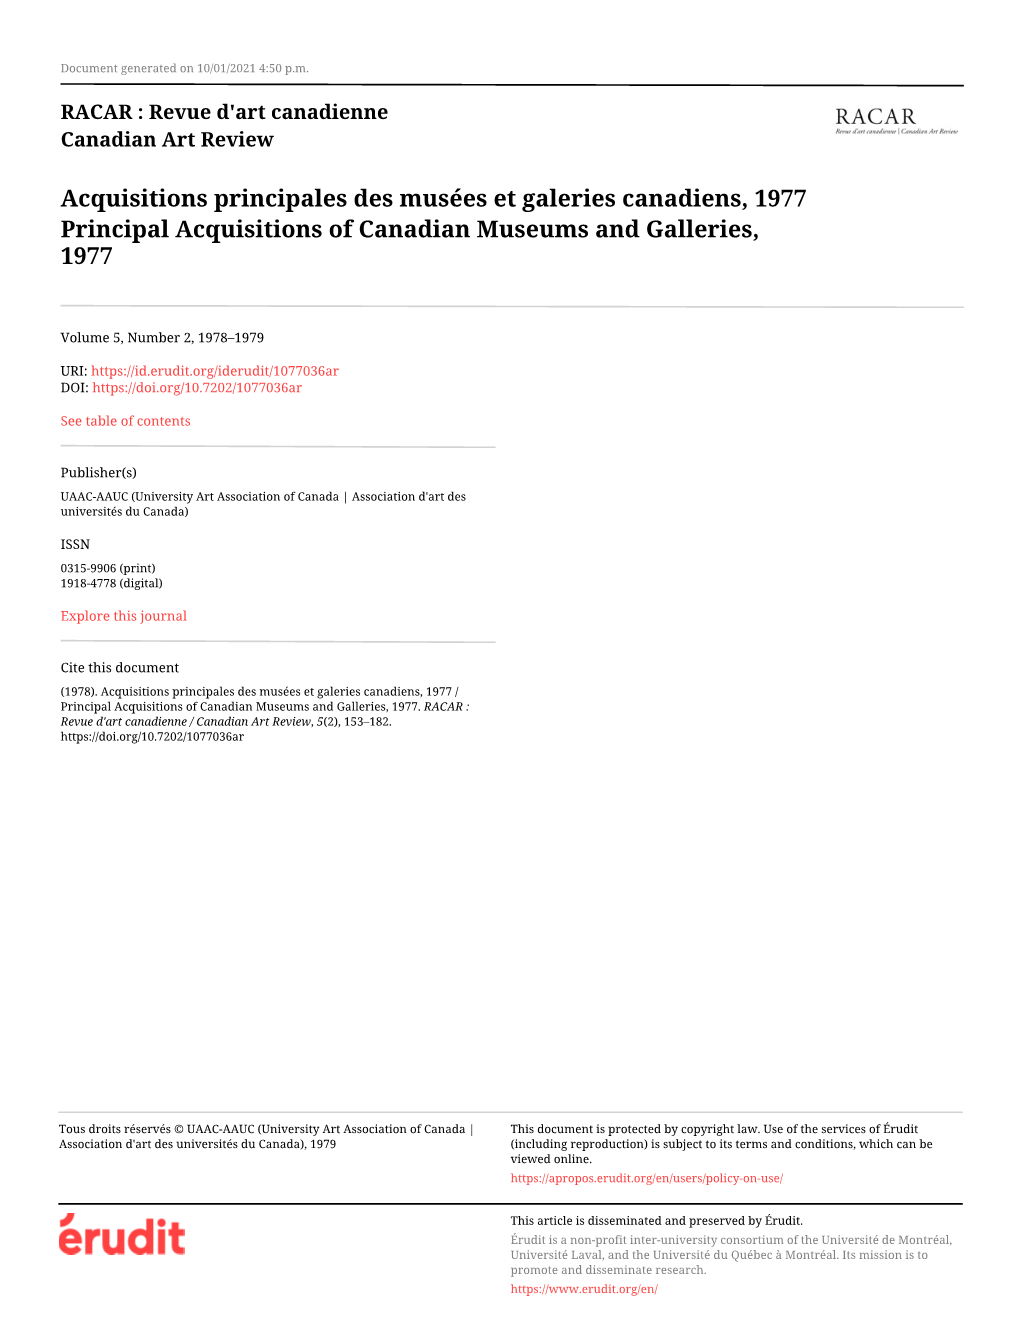 Acquisitions Principales Des Musées Et Galeries Canadiens, 1977 Principal Acquisitions of Canadian Museums and Galleries, 1977